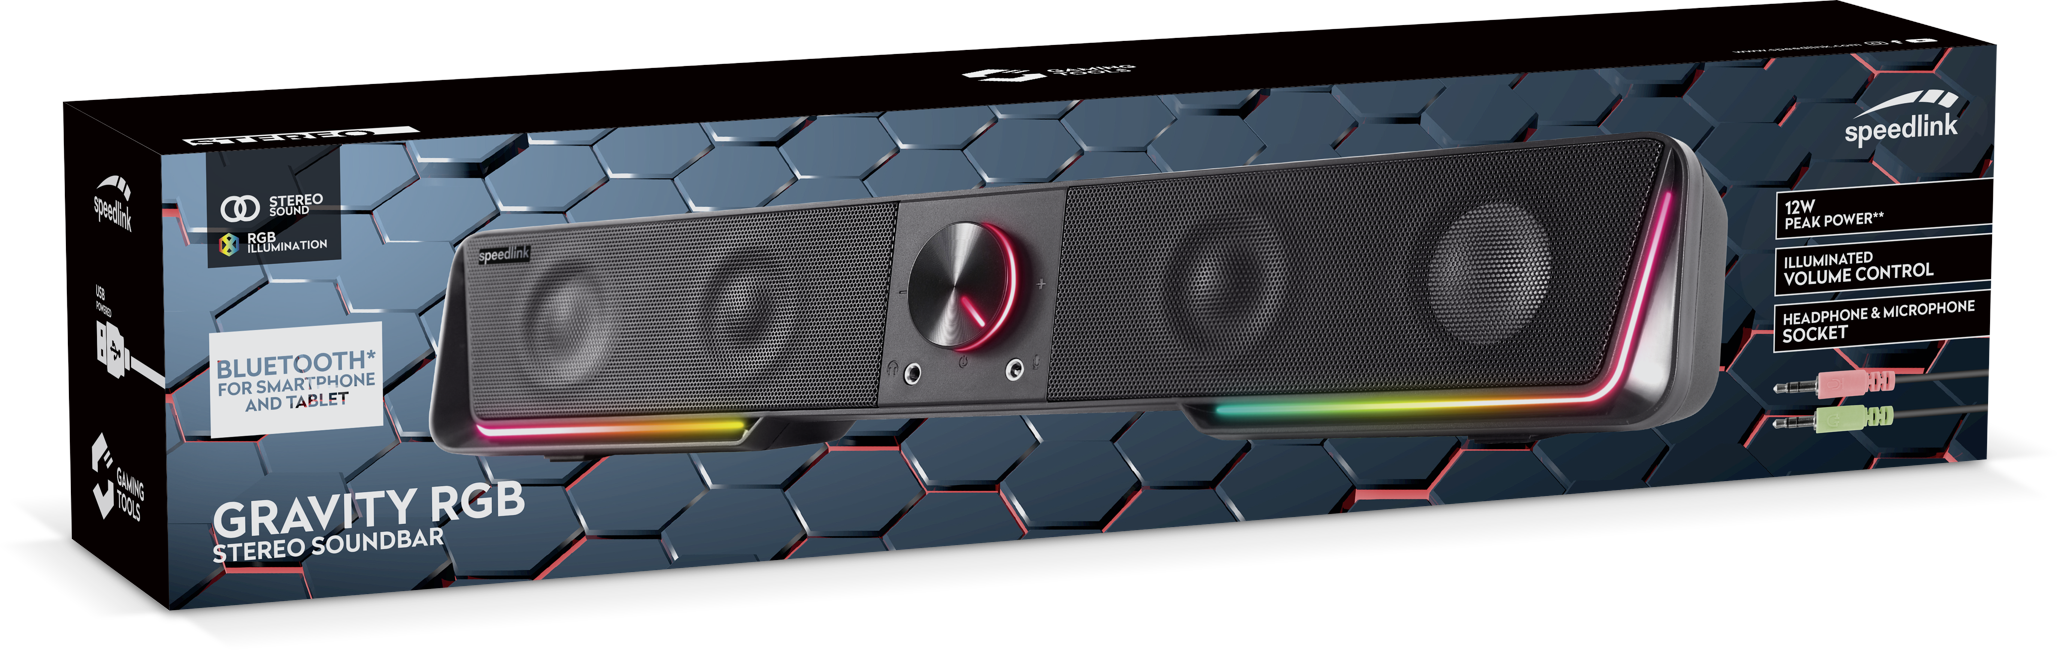 Speedlink - GRAVITY RGB Stereo Soundbar, Schwarz